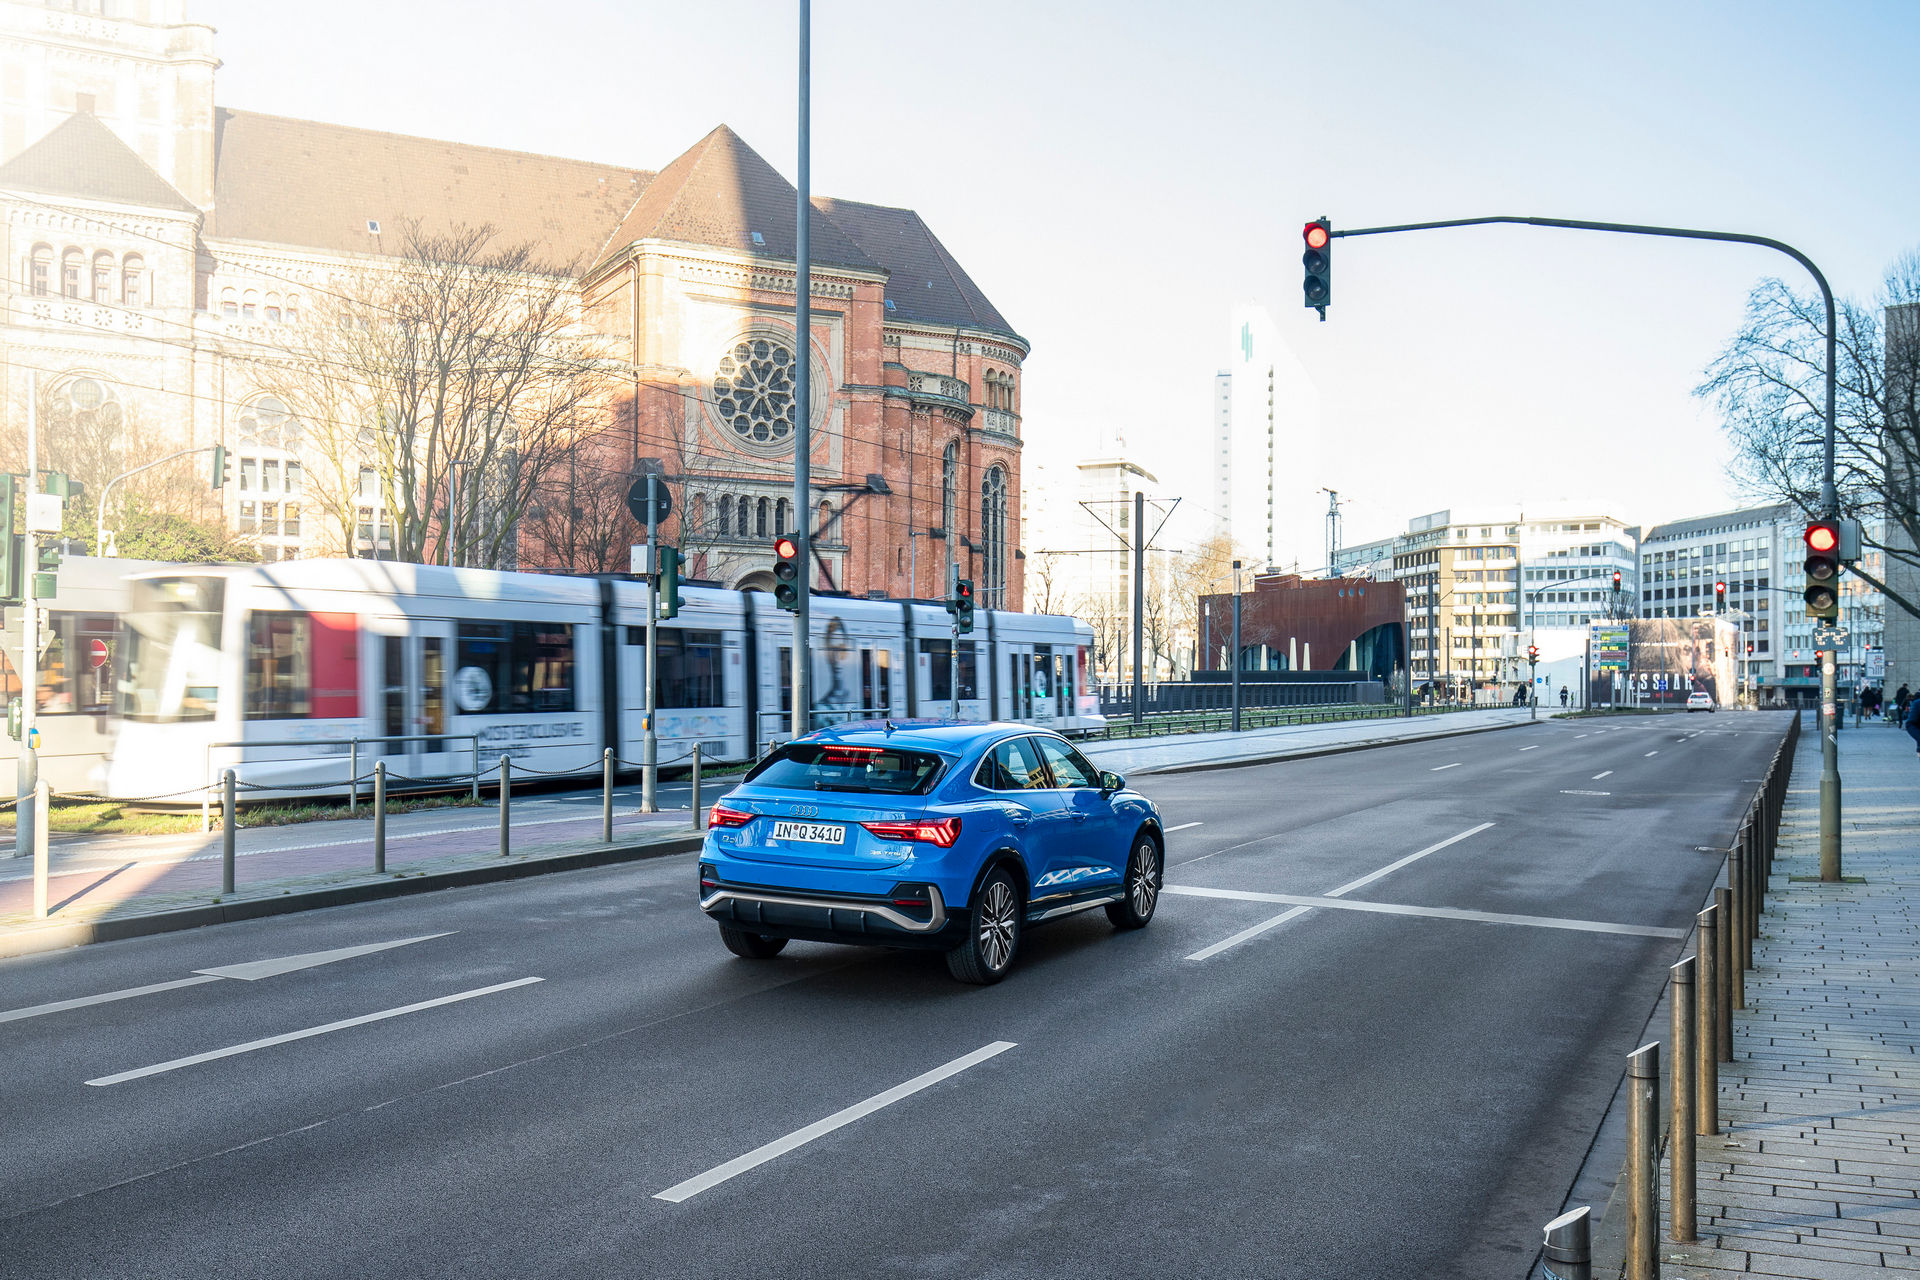 سيارات اودي تبدأ بالتواصل مع إشارات المرور في ألمانيا! 4